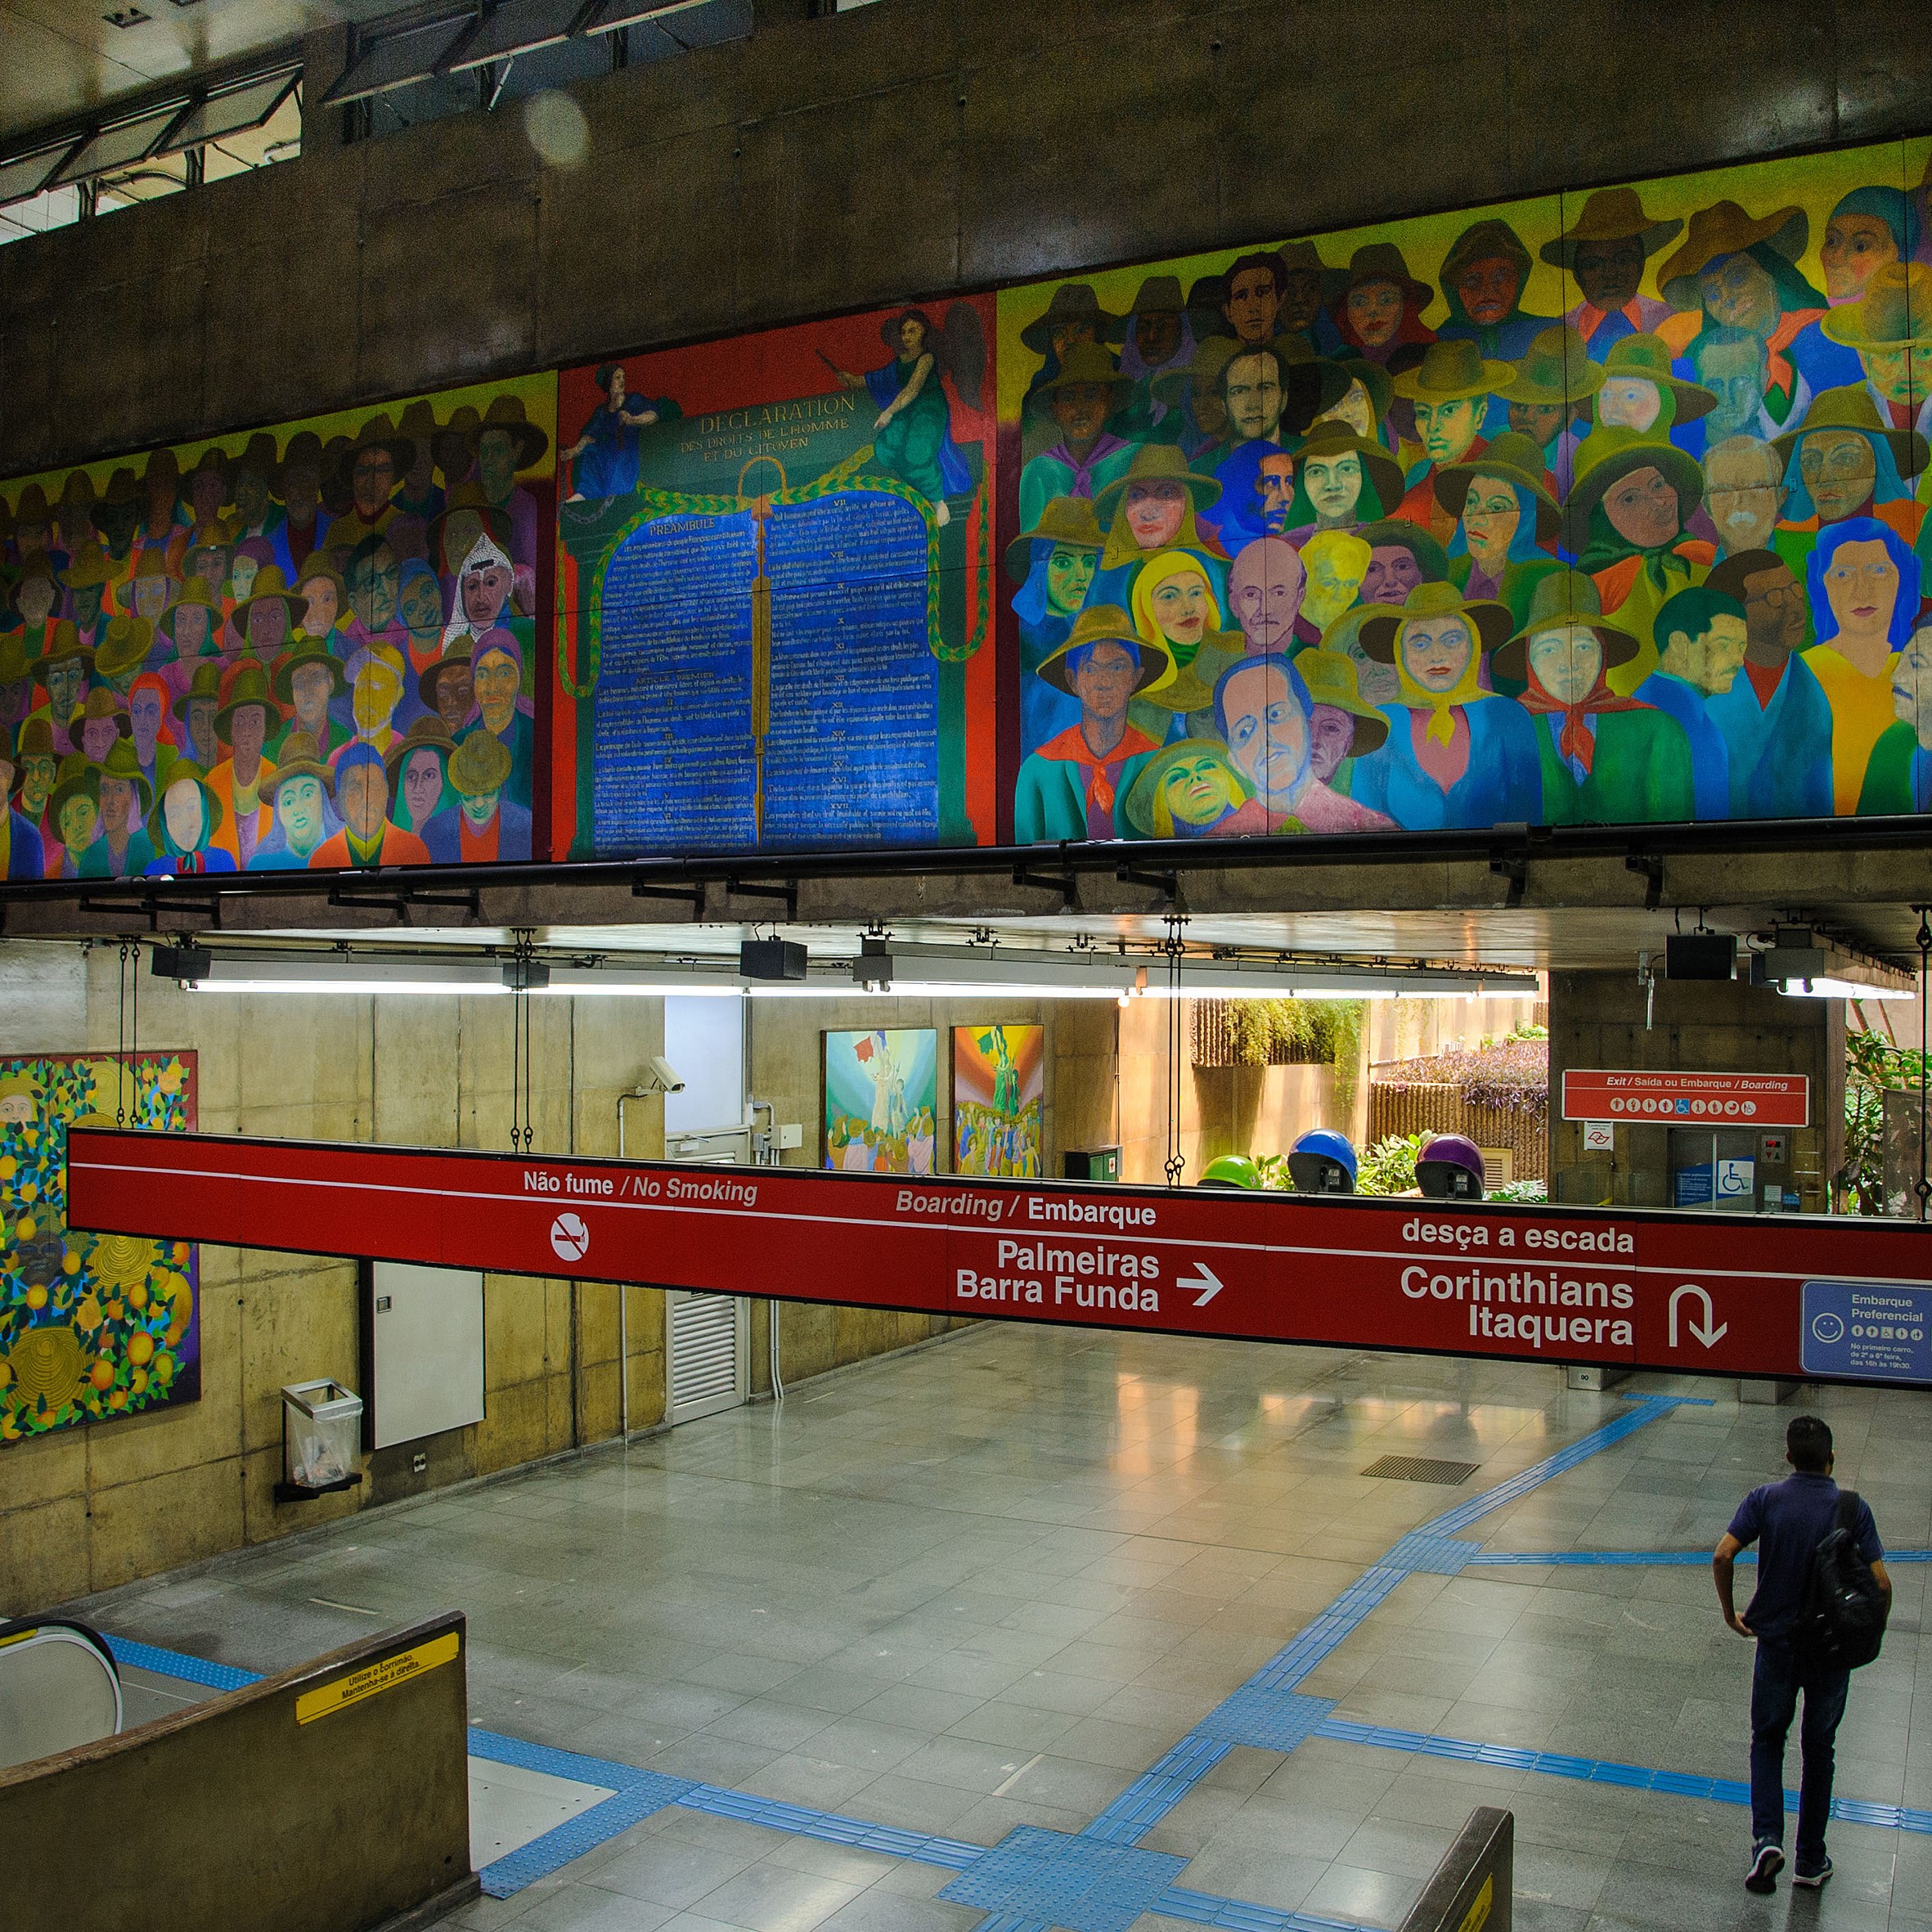   Interior da estação Marechal Deodoro com painéis de Gontran Guanaes Netto ao fundo.